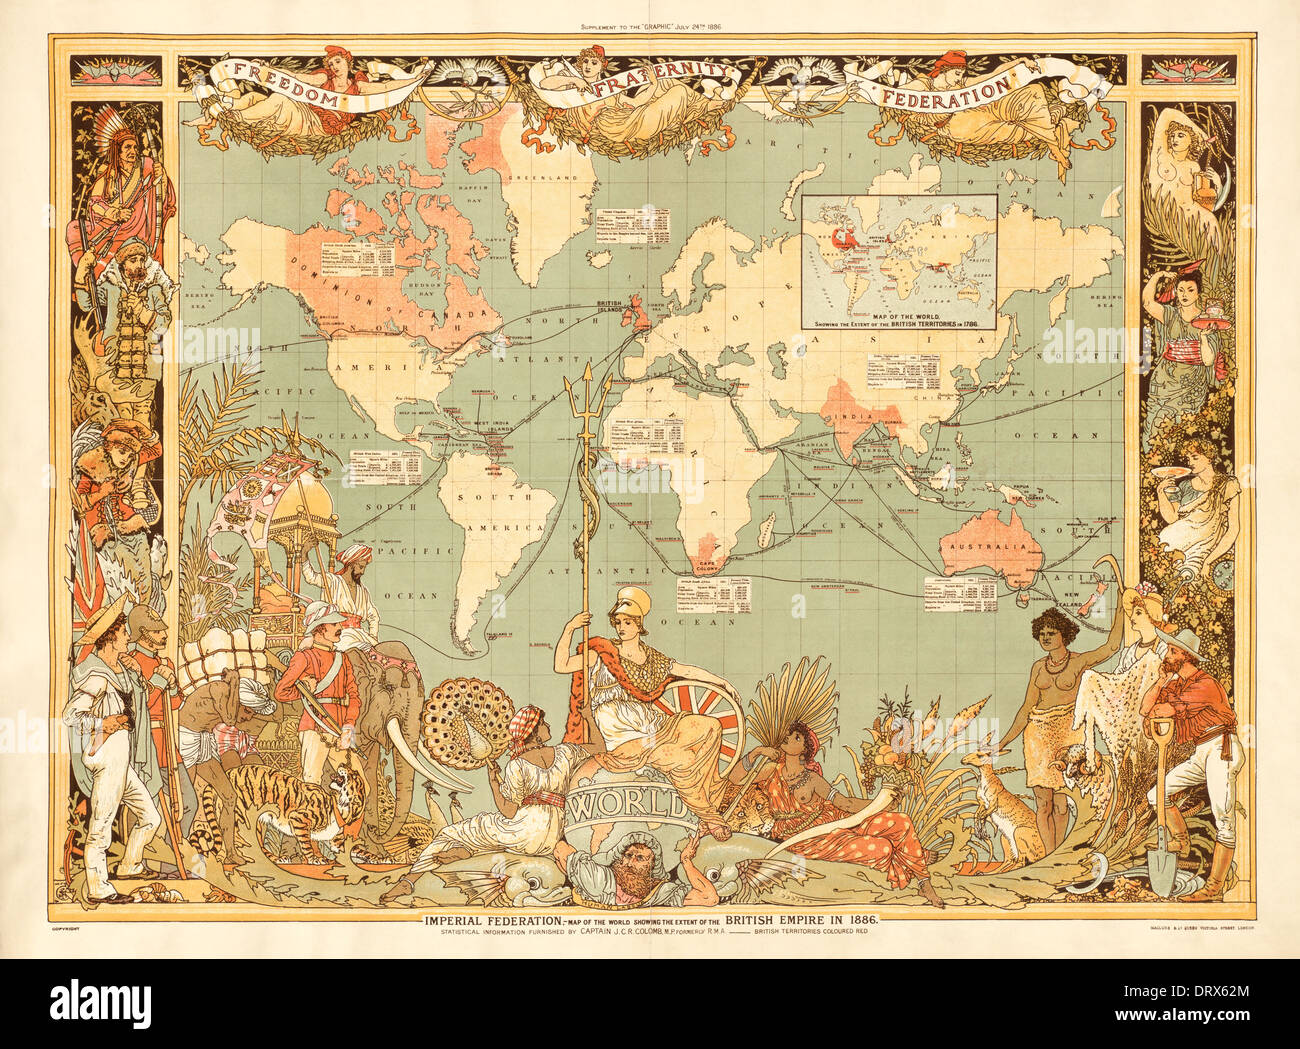 Carte montrant l'étendue de l'Empire britannique en 1886, distribué comme supplément au Journal hebdomadaire Graphique 24 Juillet 1886 Banque D'Images